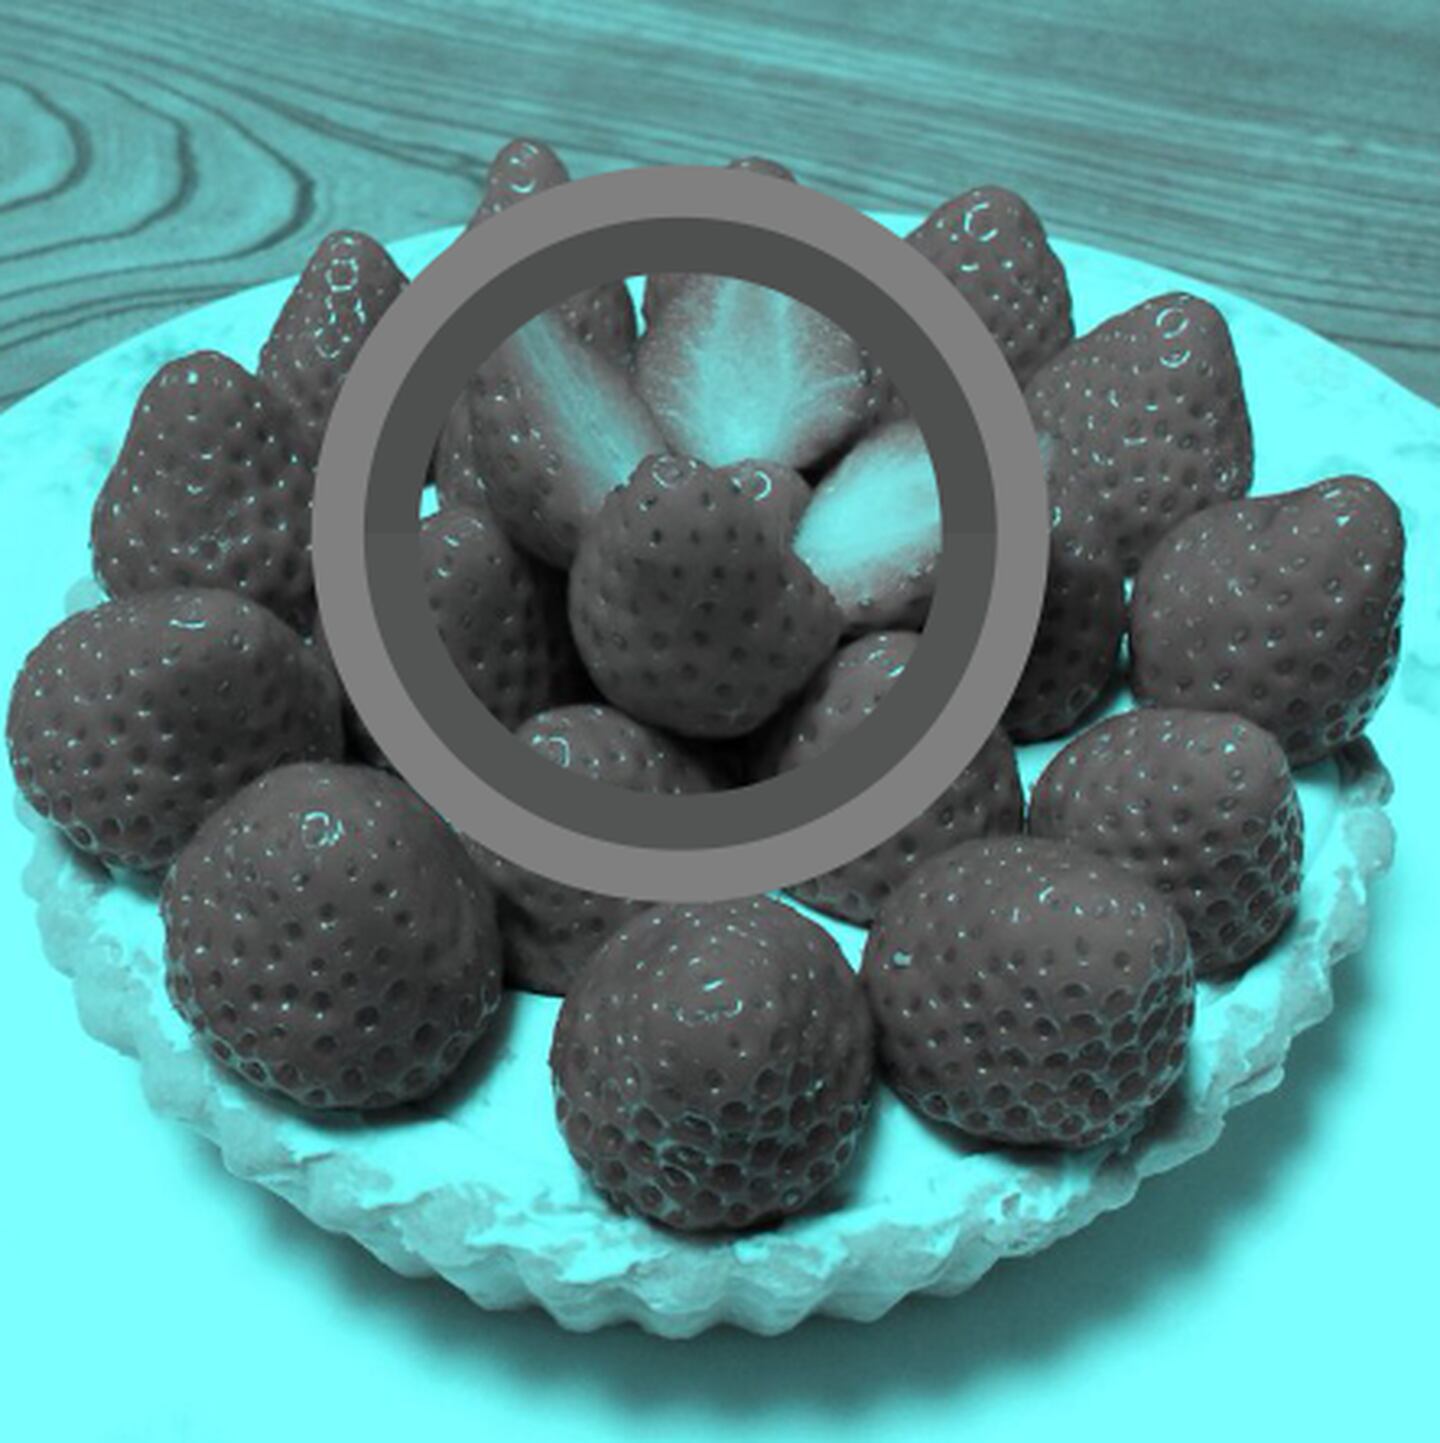 Con la herramienta "gotero" de Photoshop se puede comprobar que las fresas en la imagen son grises